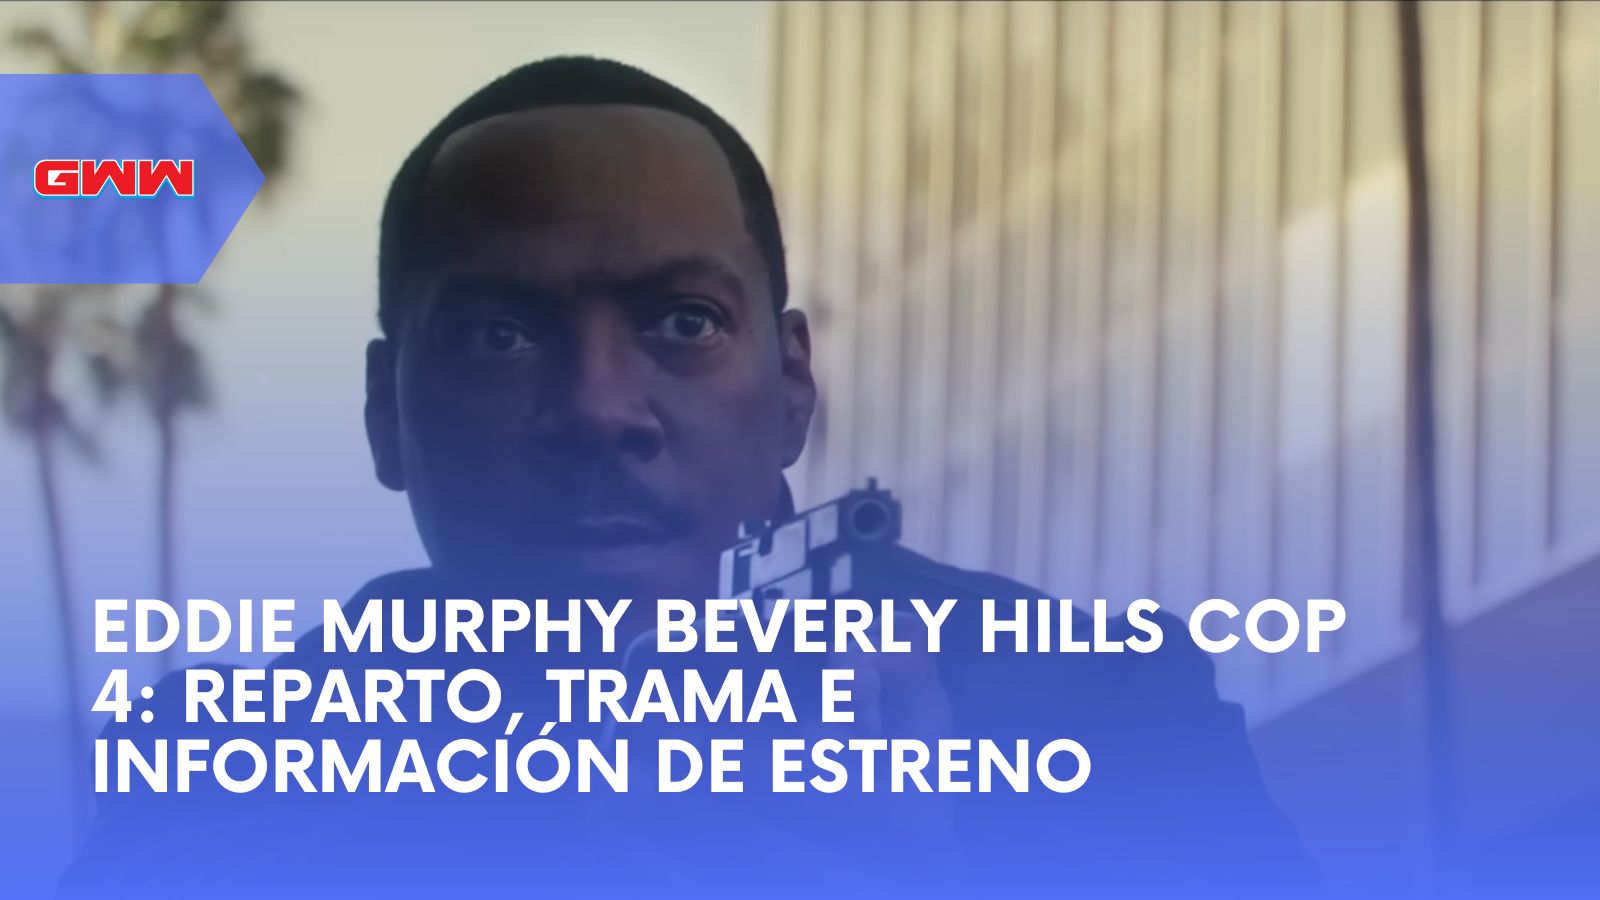 Eddie Murphy Beverly Hills Cop 4: Reparto, Trama e Información de Estreno